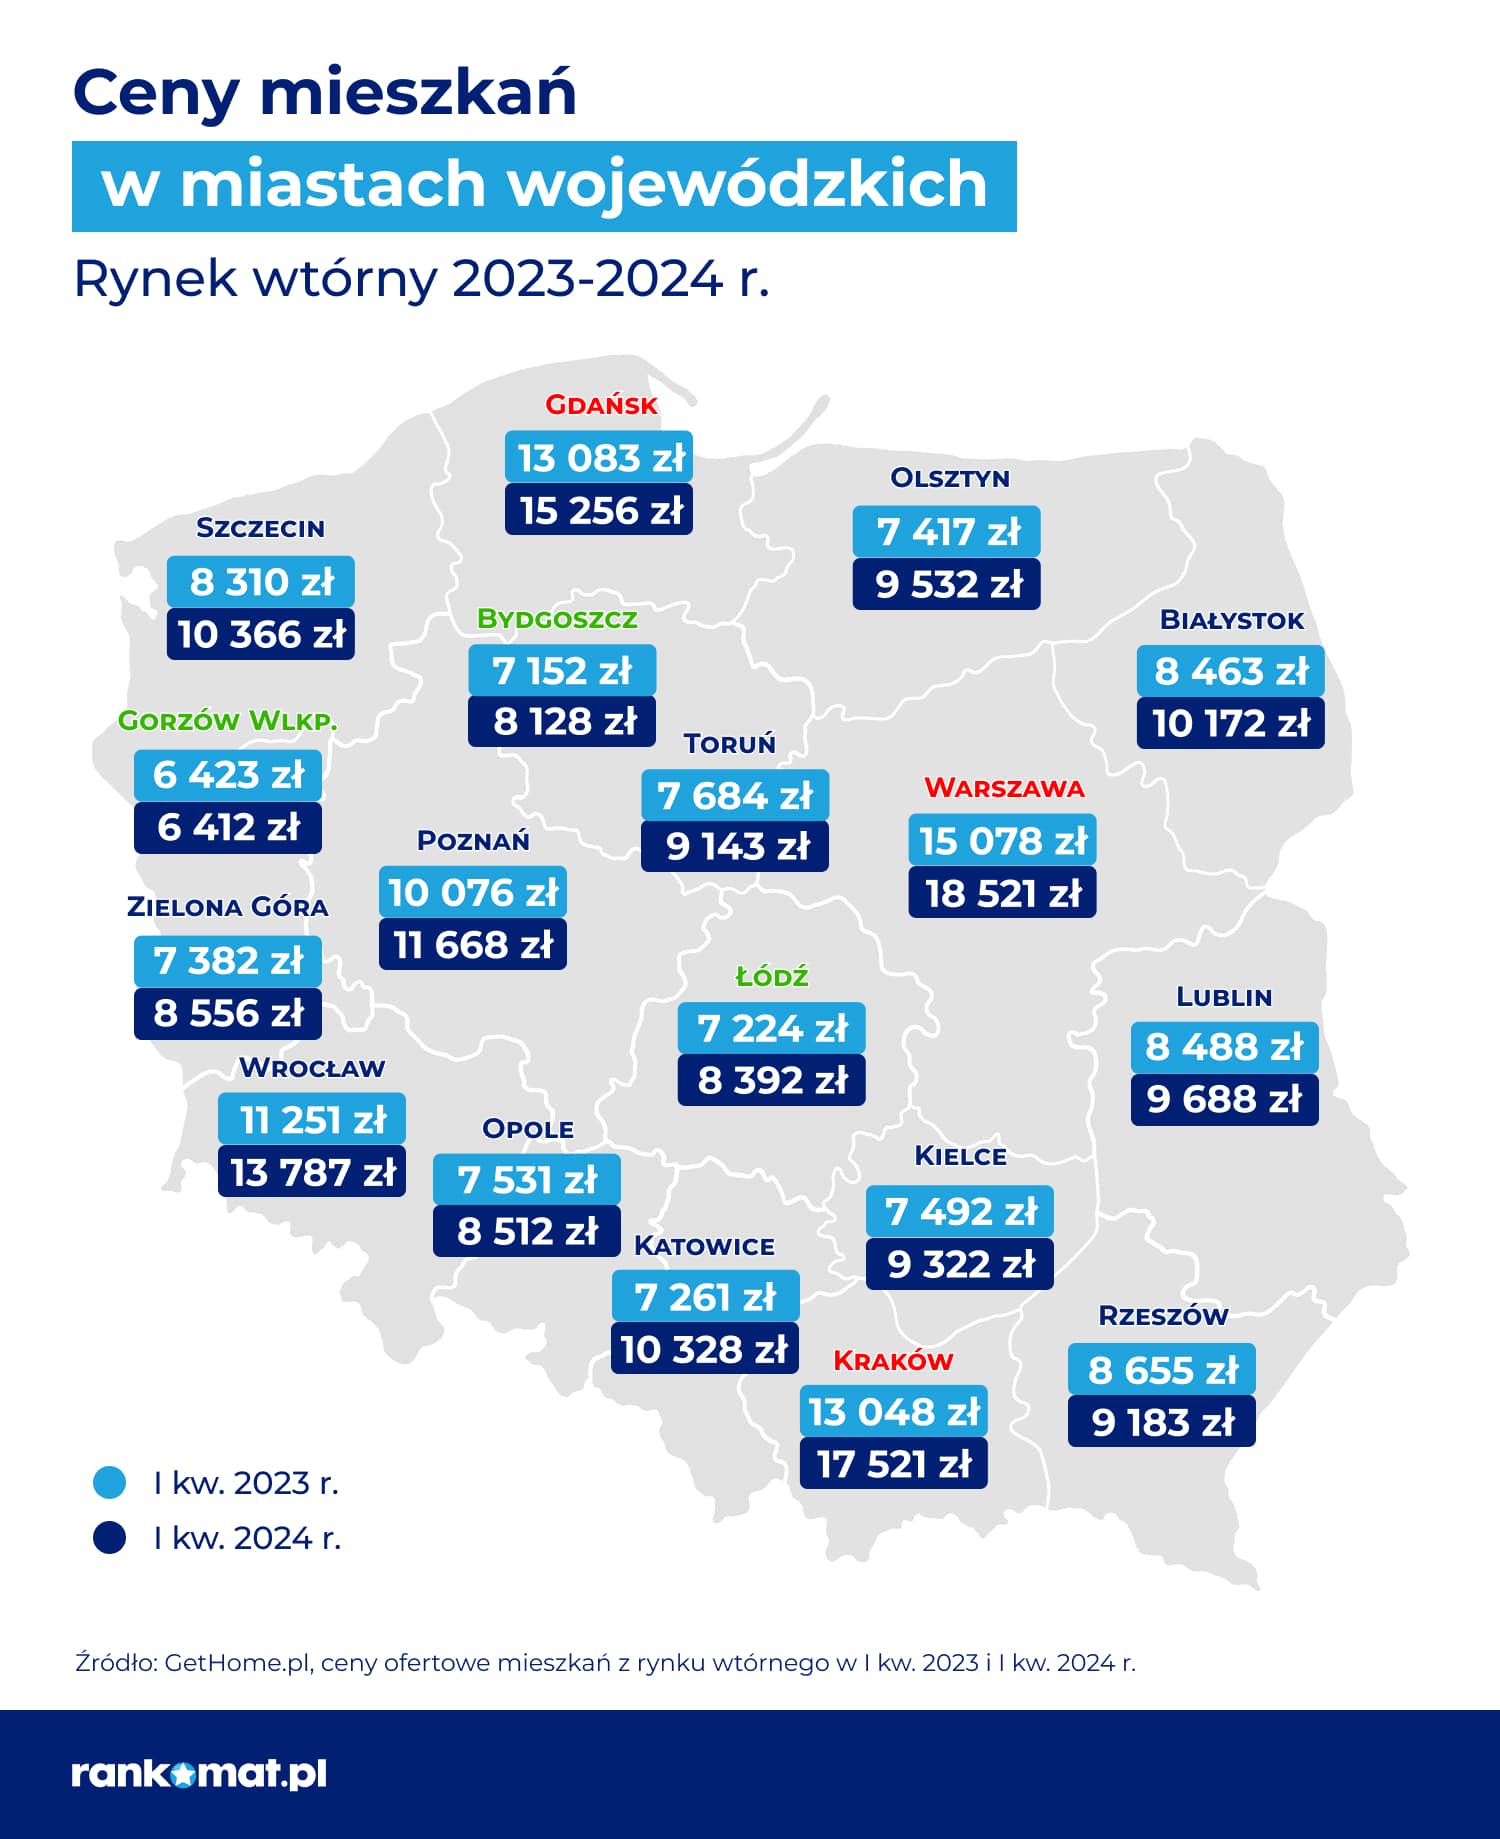 Rankomat.pl - ceny mieszkań na rynku wtórnym - 1 kw. 2024 r.